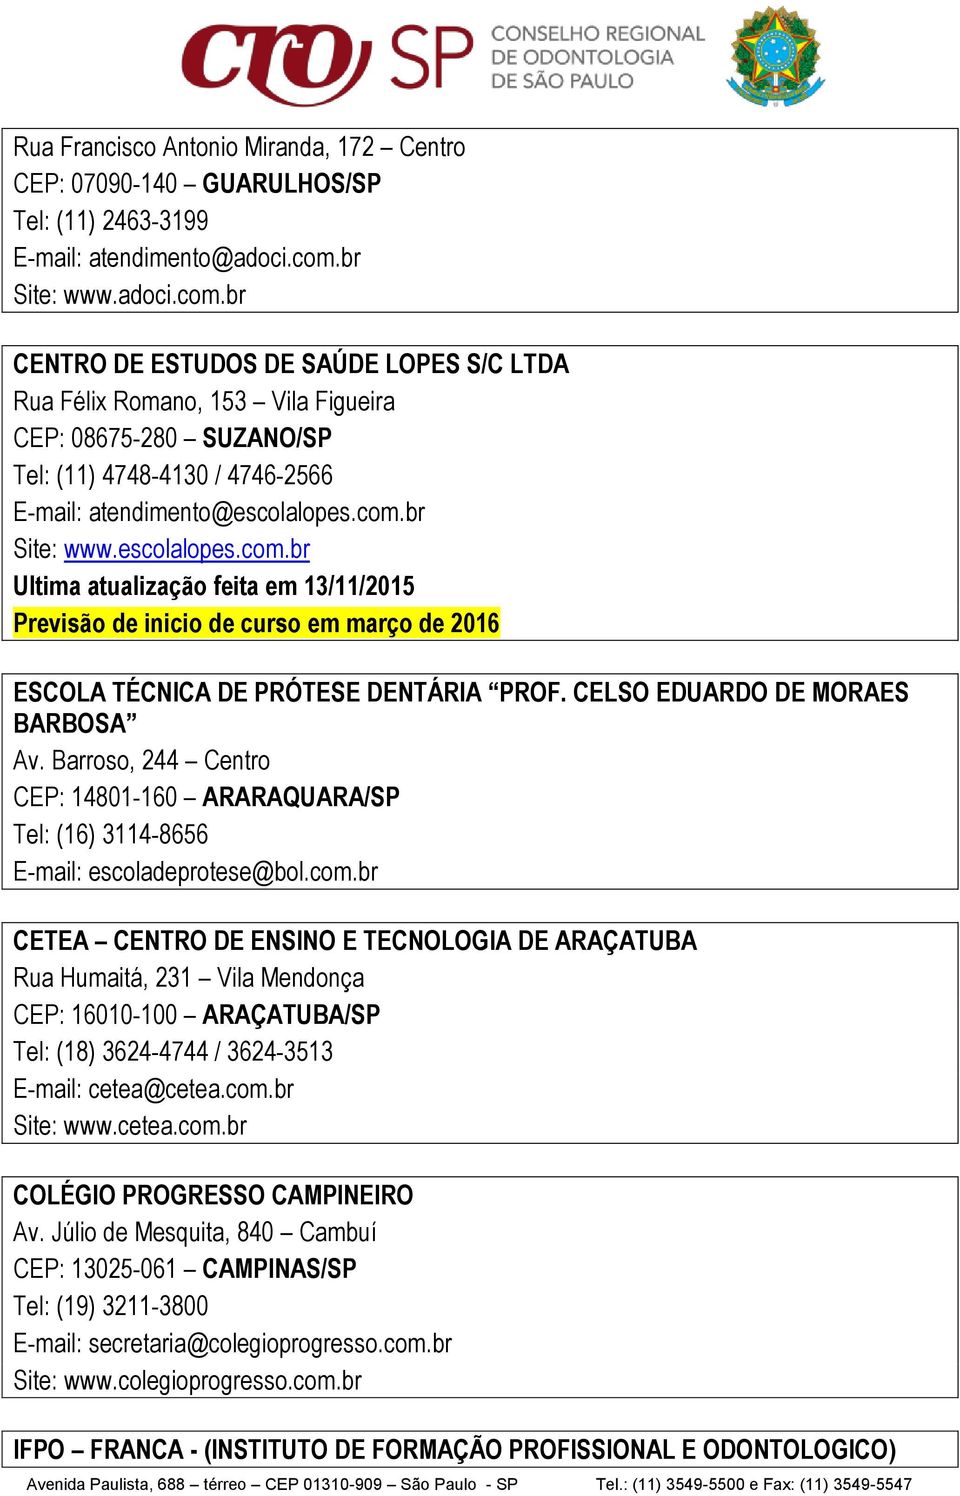 CELSO EDUARDO DE MORAES BARBOSA Av. Barroso, 244 Centro CEP: 14801-160 ARARAQUARA/SP Tel: (16) 3114-8656 E-mail: escoladeprotese@bol.com.